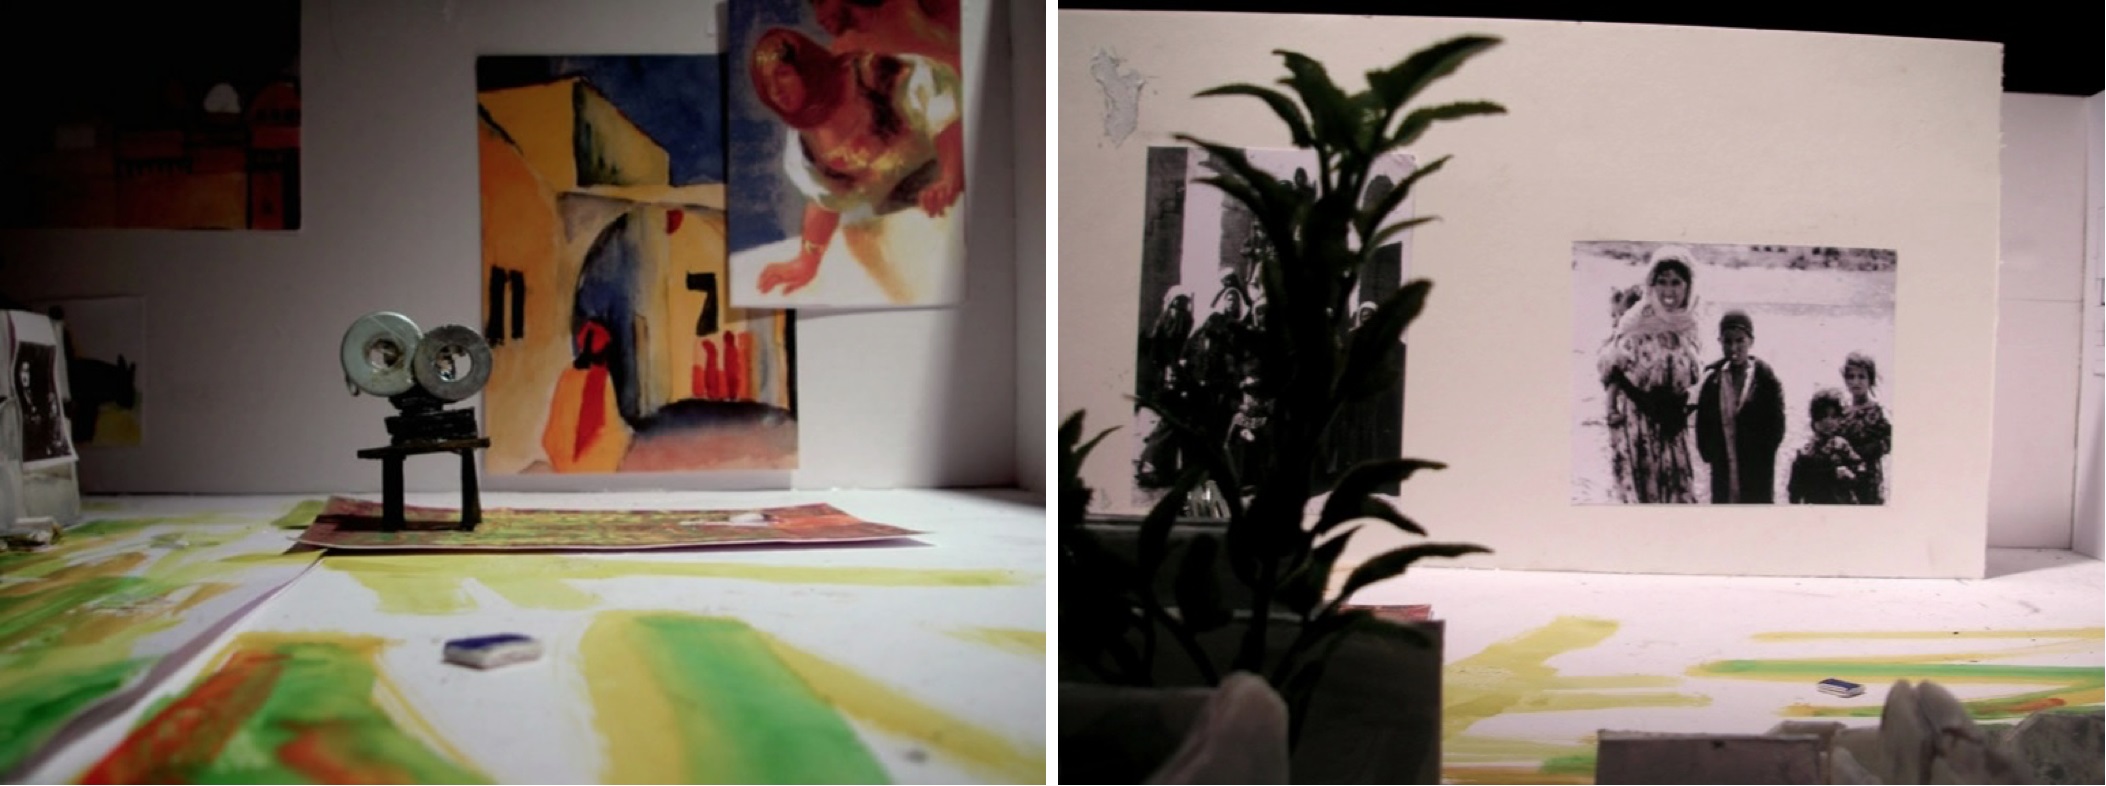 Jean-Luc Godard et Le livre dimage « Penser avec ses mains (...) image